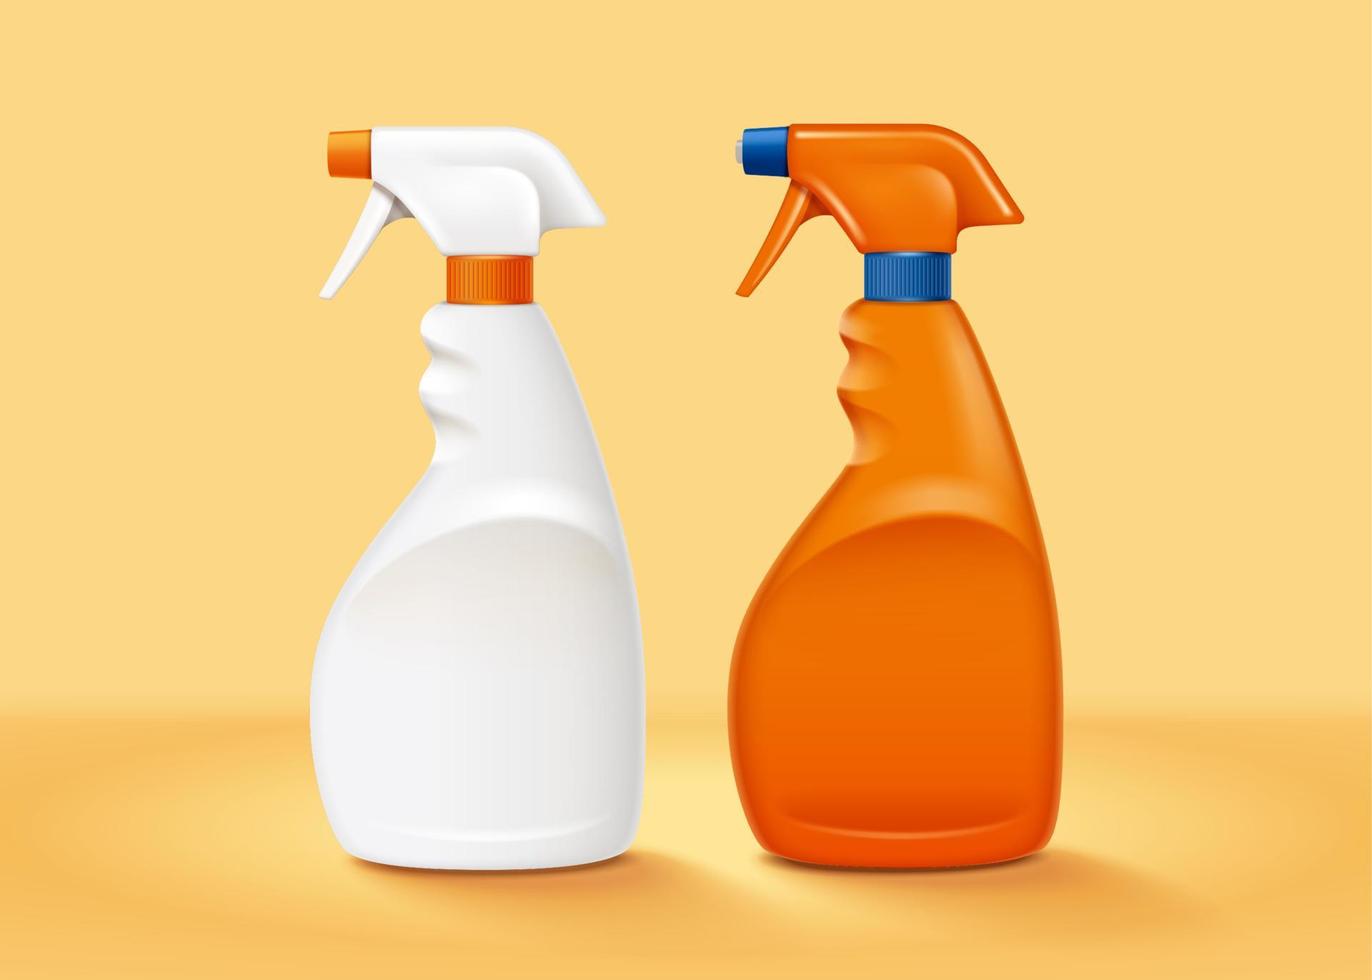 realistisch bespotten omhoog verzameling van wit en oranje plastic op gang brengen verstuiven flessen, 3d illustratie vector